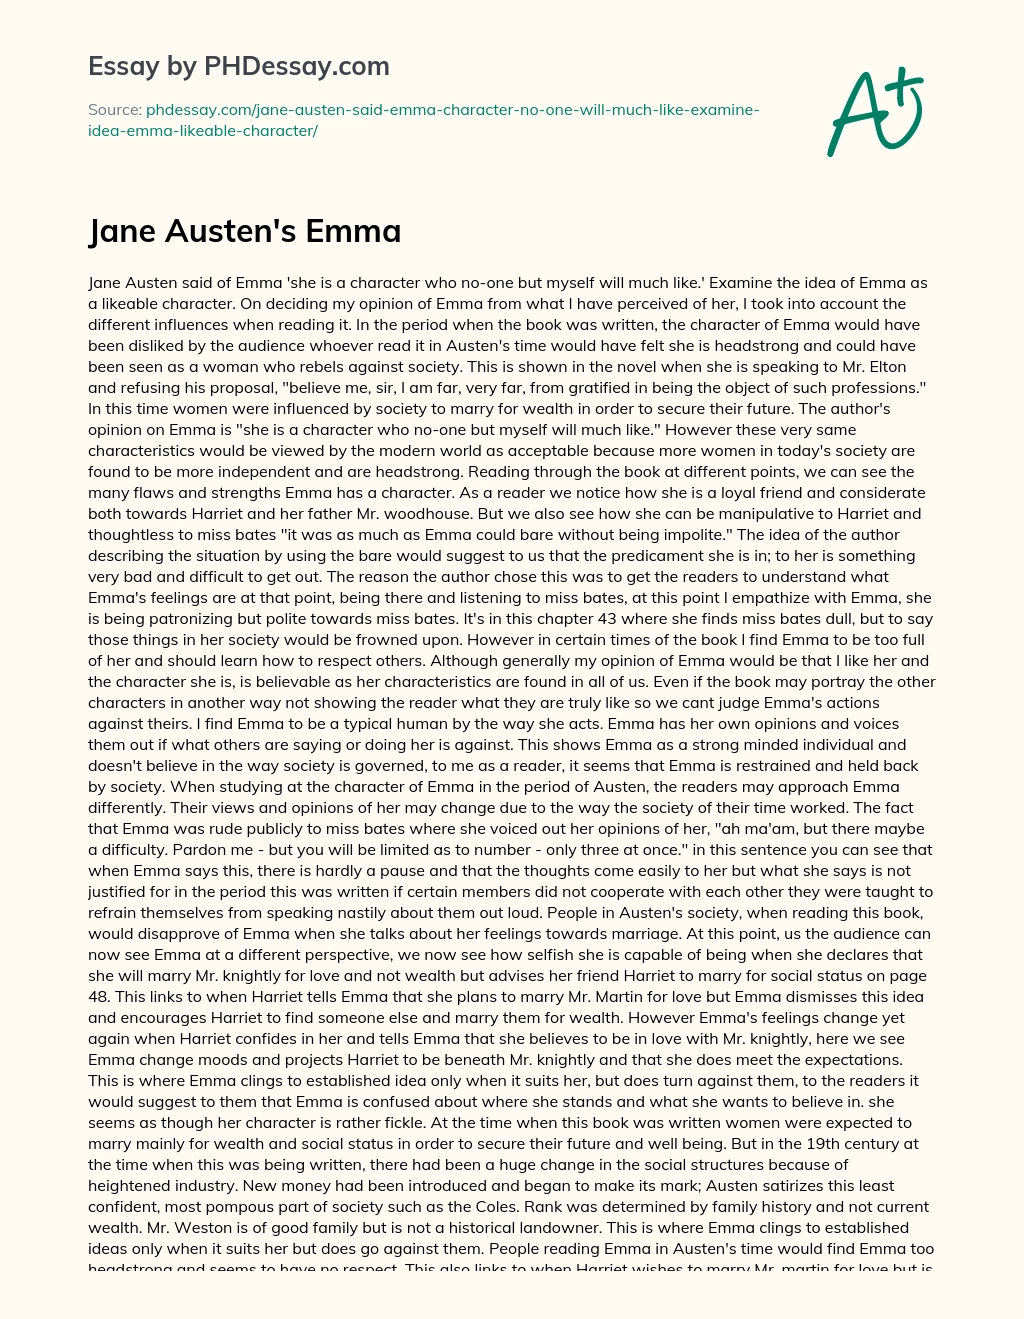 Jane Austen’s Emma essay